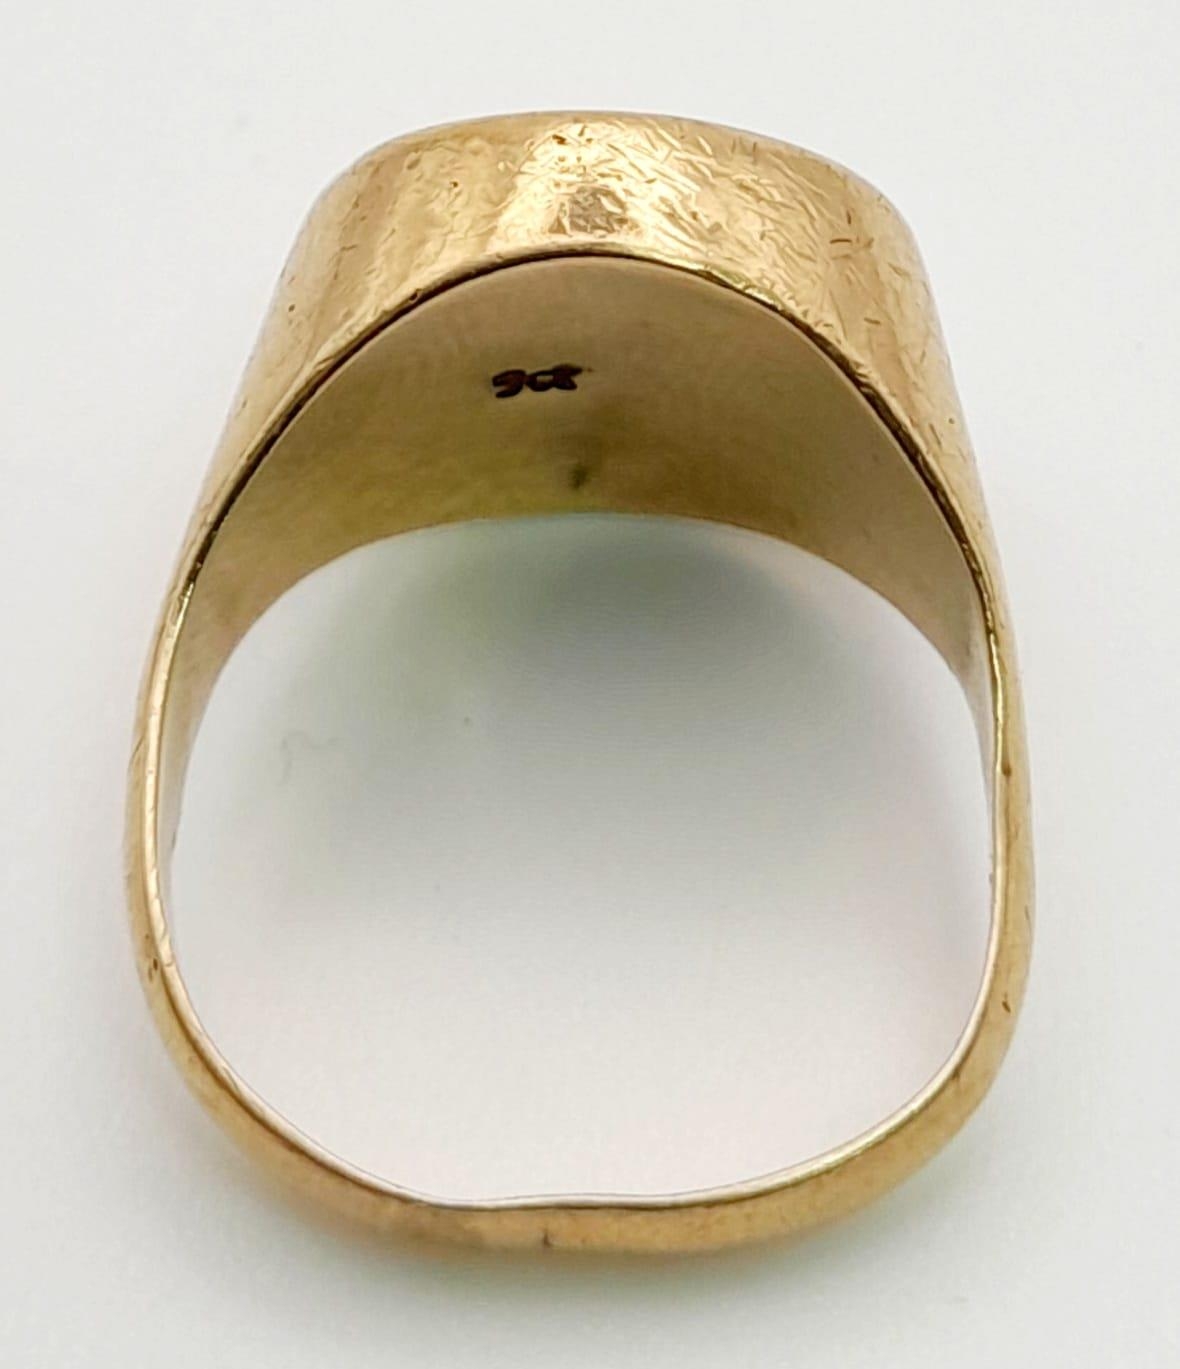 A 22k Gold Estados Unidos Mexicanos Coin Signet Ring. Coin is 22k gold - Ring is 9K gold. Size O. - Image 3 of 3